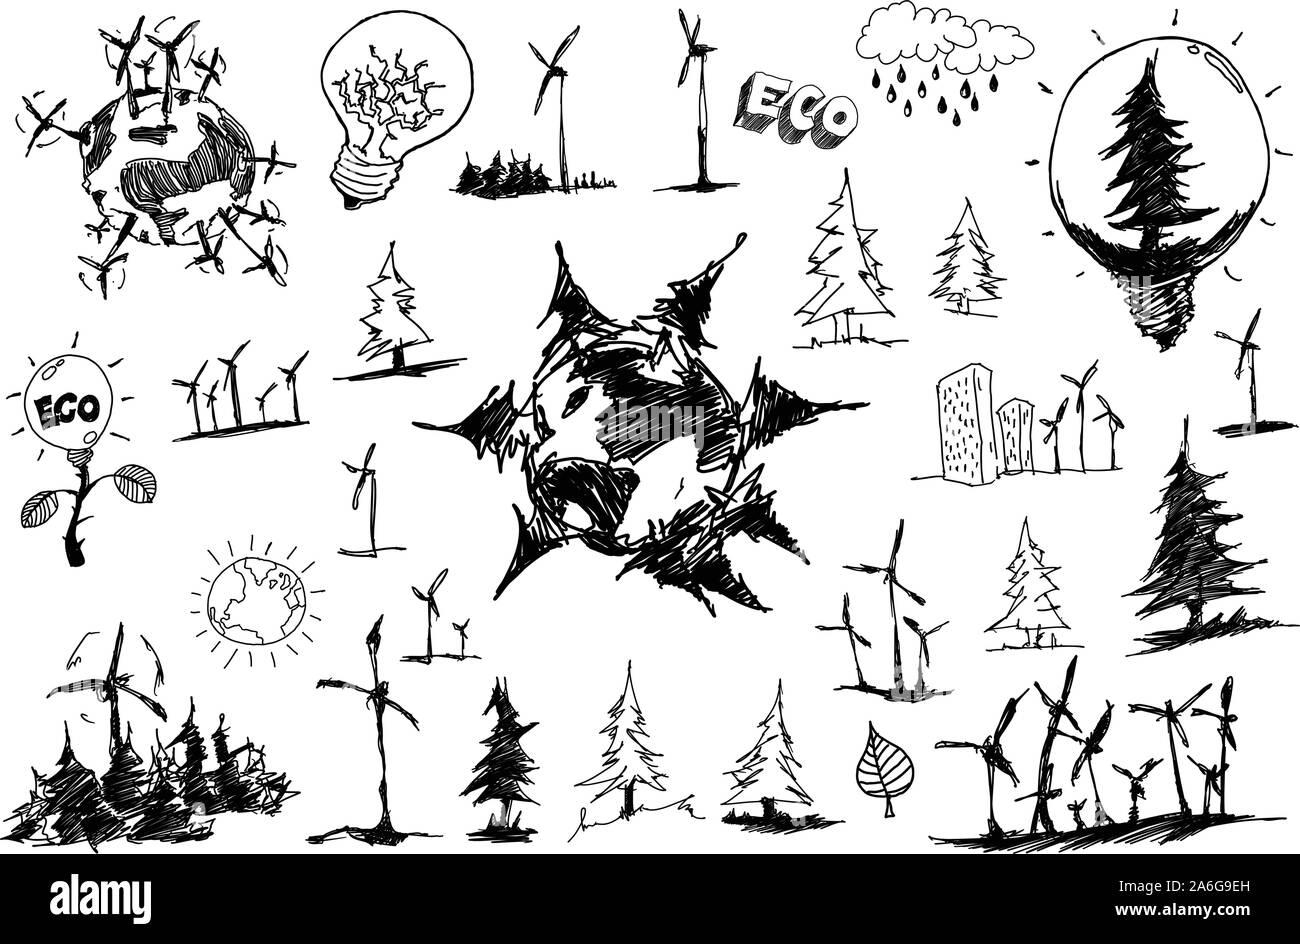 De nombreux croquis dessinés à la main, de sujets concernant la nature nd Environnement et écologie et des arbres et de l'énergie éolienne Illustration de Vecteur